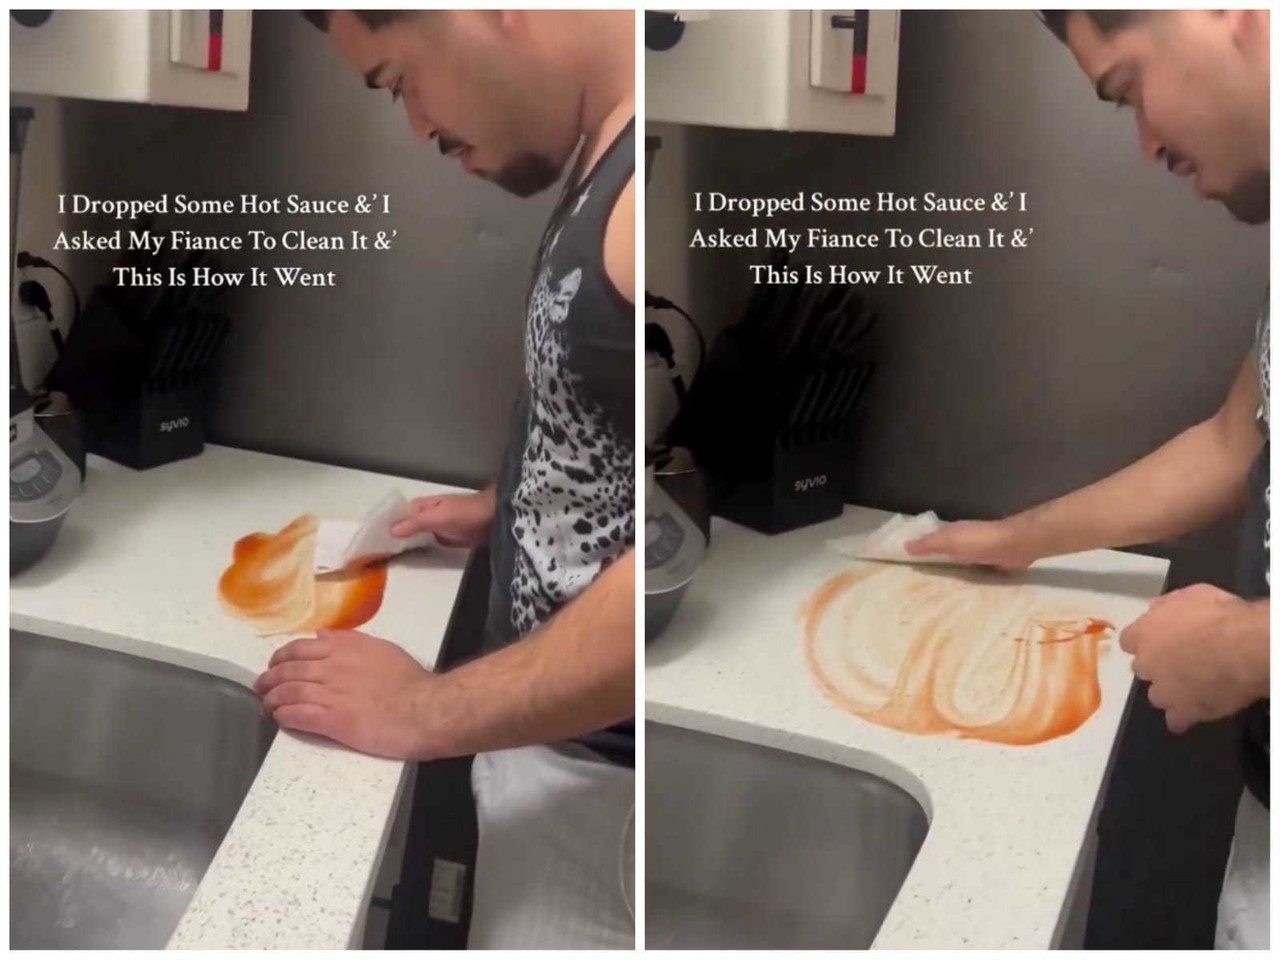 Joven en redes sociales desata debate por limpiar salsa de forma inusual (VIDEO)